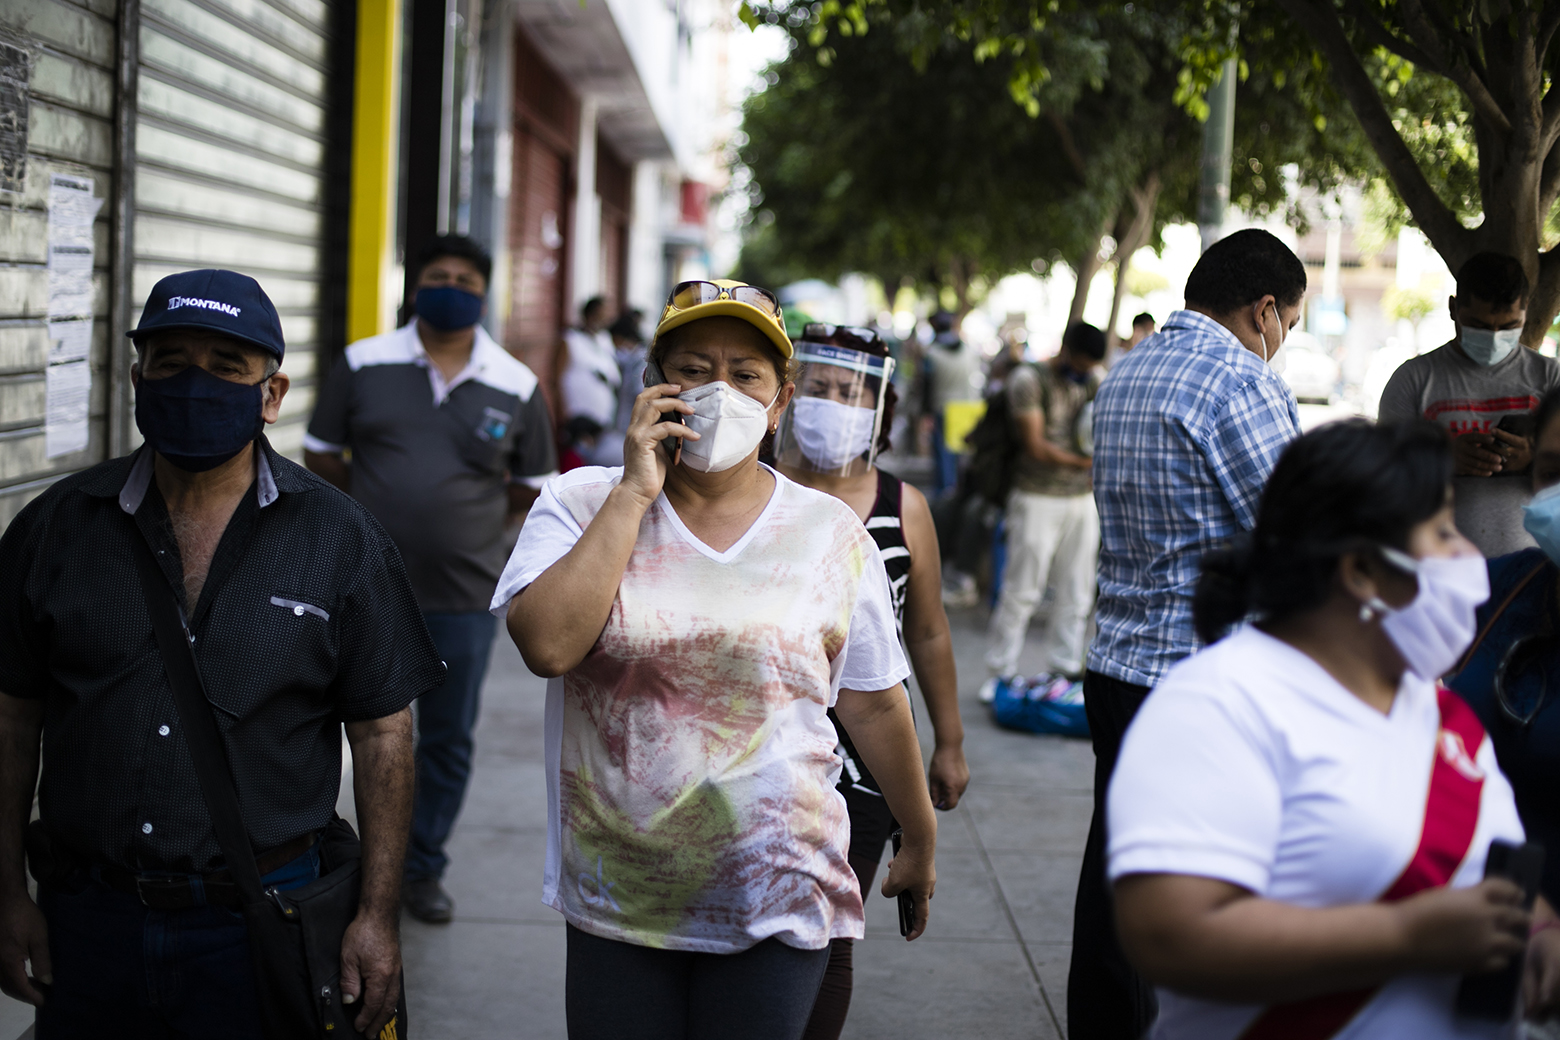 Una vista de las principales vertebras de la ciudad como la avenida Pedro Ruiz hace pensar que no existiera pandemia alguna. Personas caminando como si fuera un día normal. 